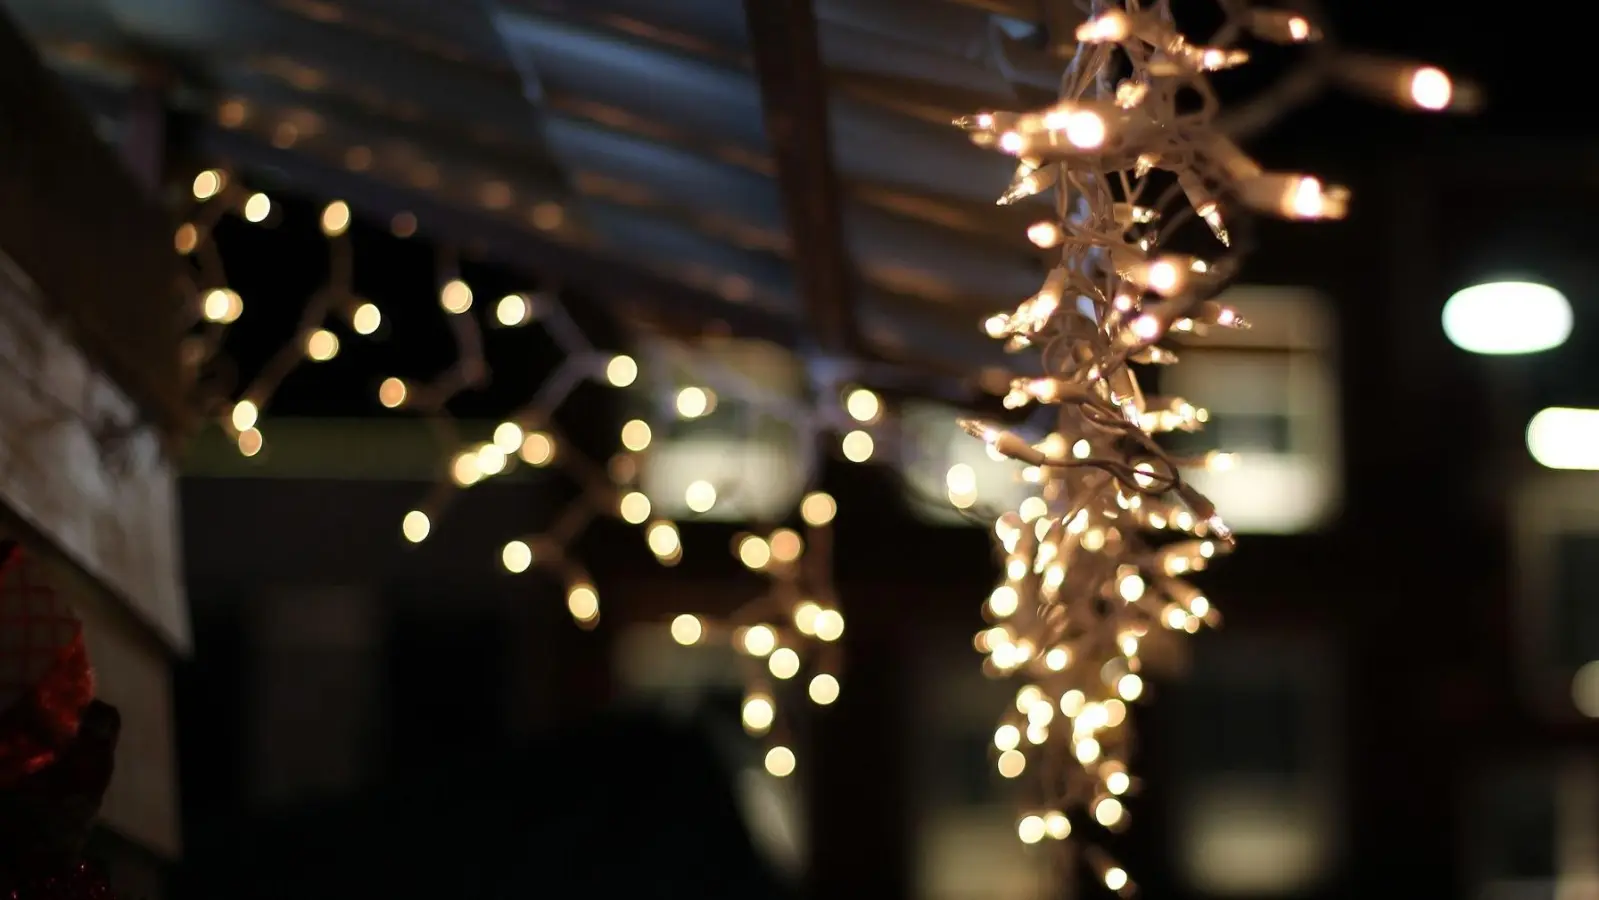 Taucha leuchtet – Fotowettbewerb zu Weihnachten (Foto: taucha-kompakt.de)